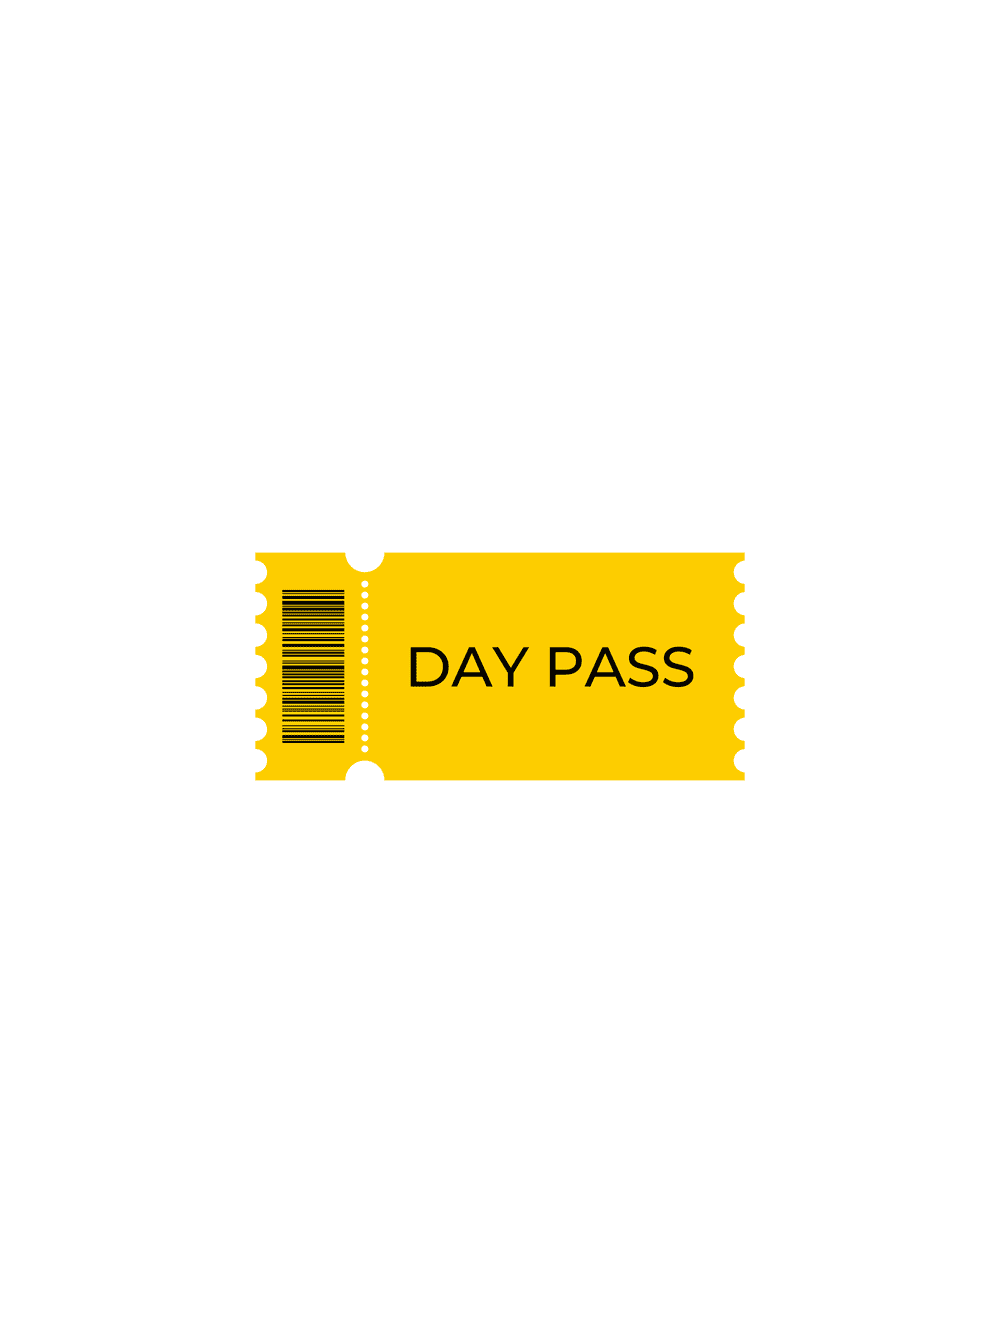 Day pass